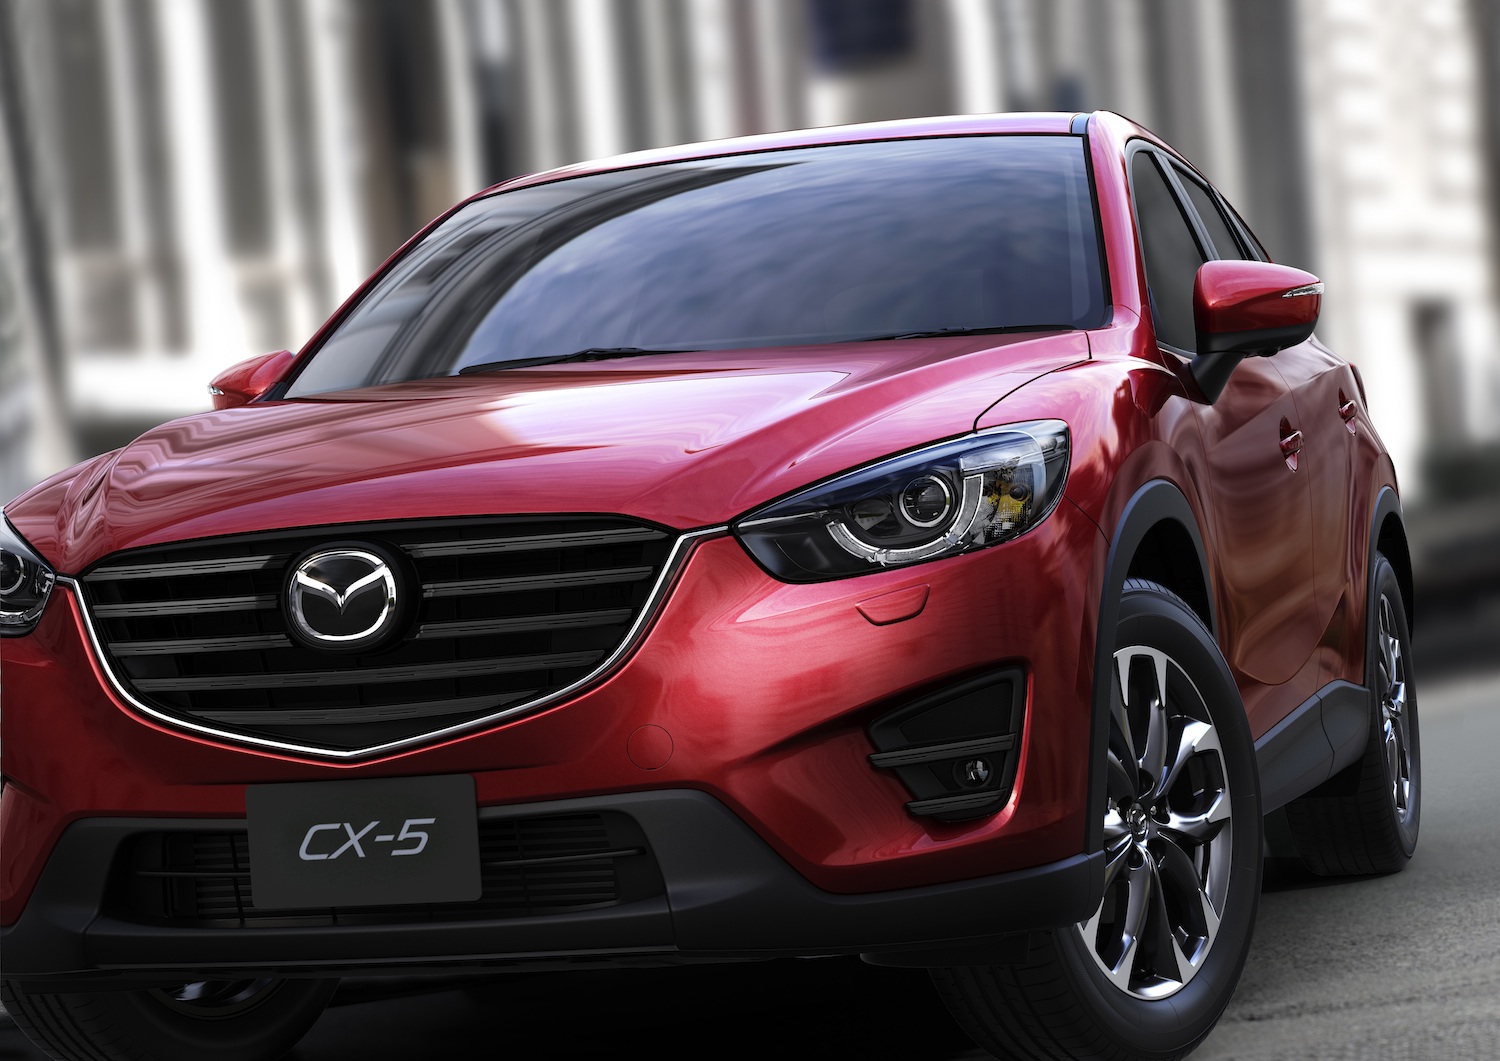 Mazda Recalls, Stops Sales Of CX-5 Vehicles Over Fuel Leak Concerns